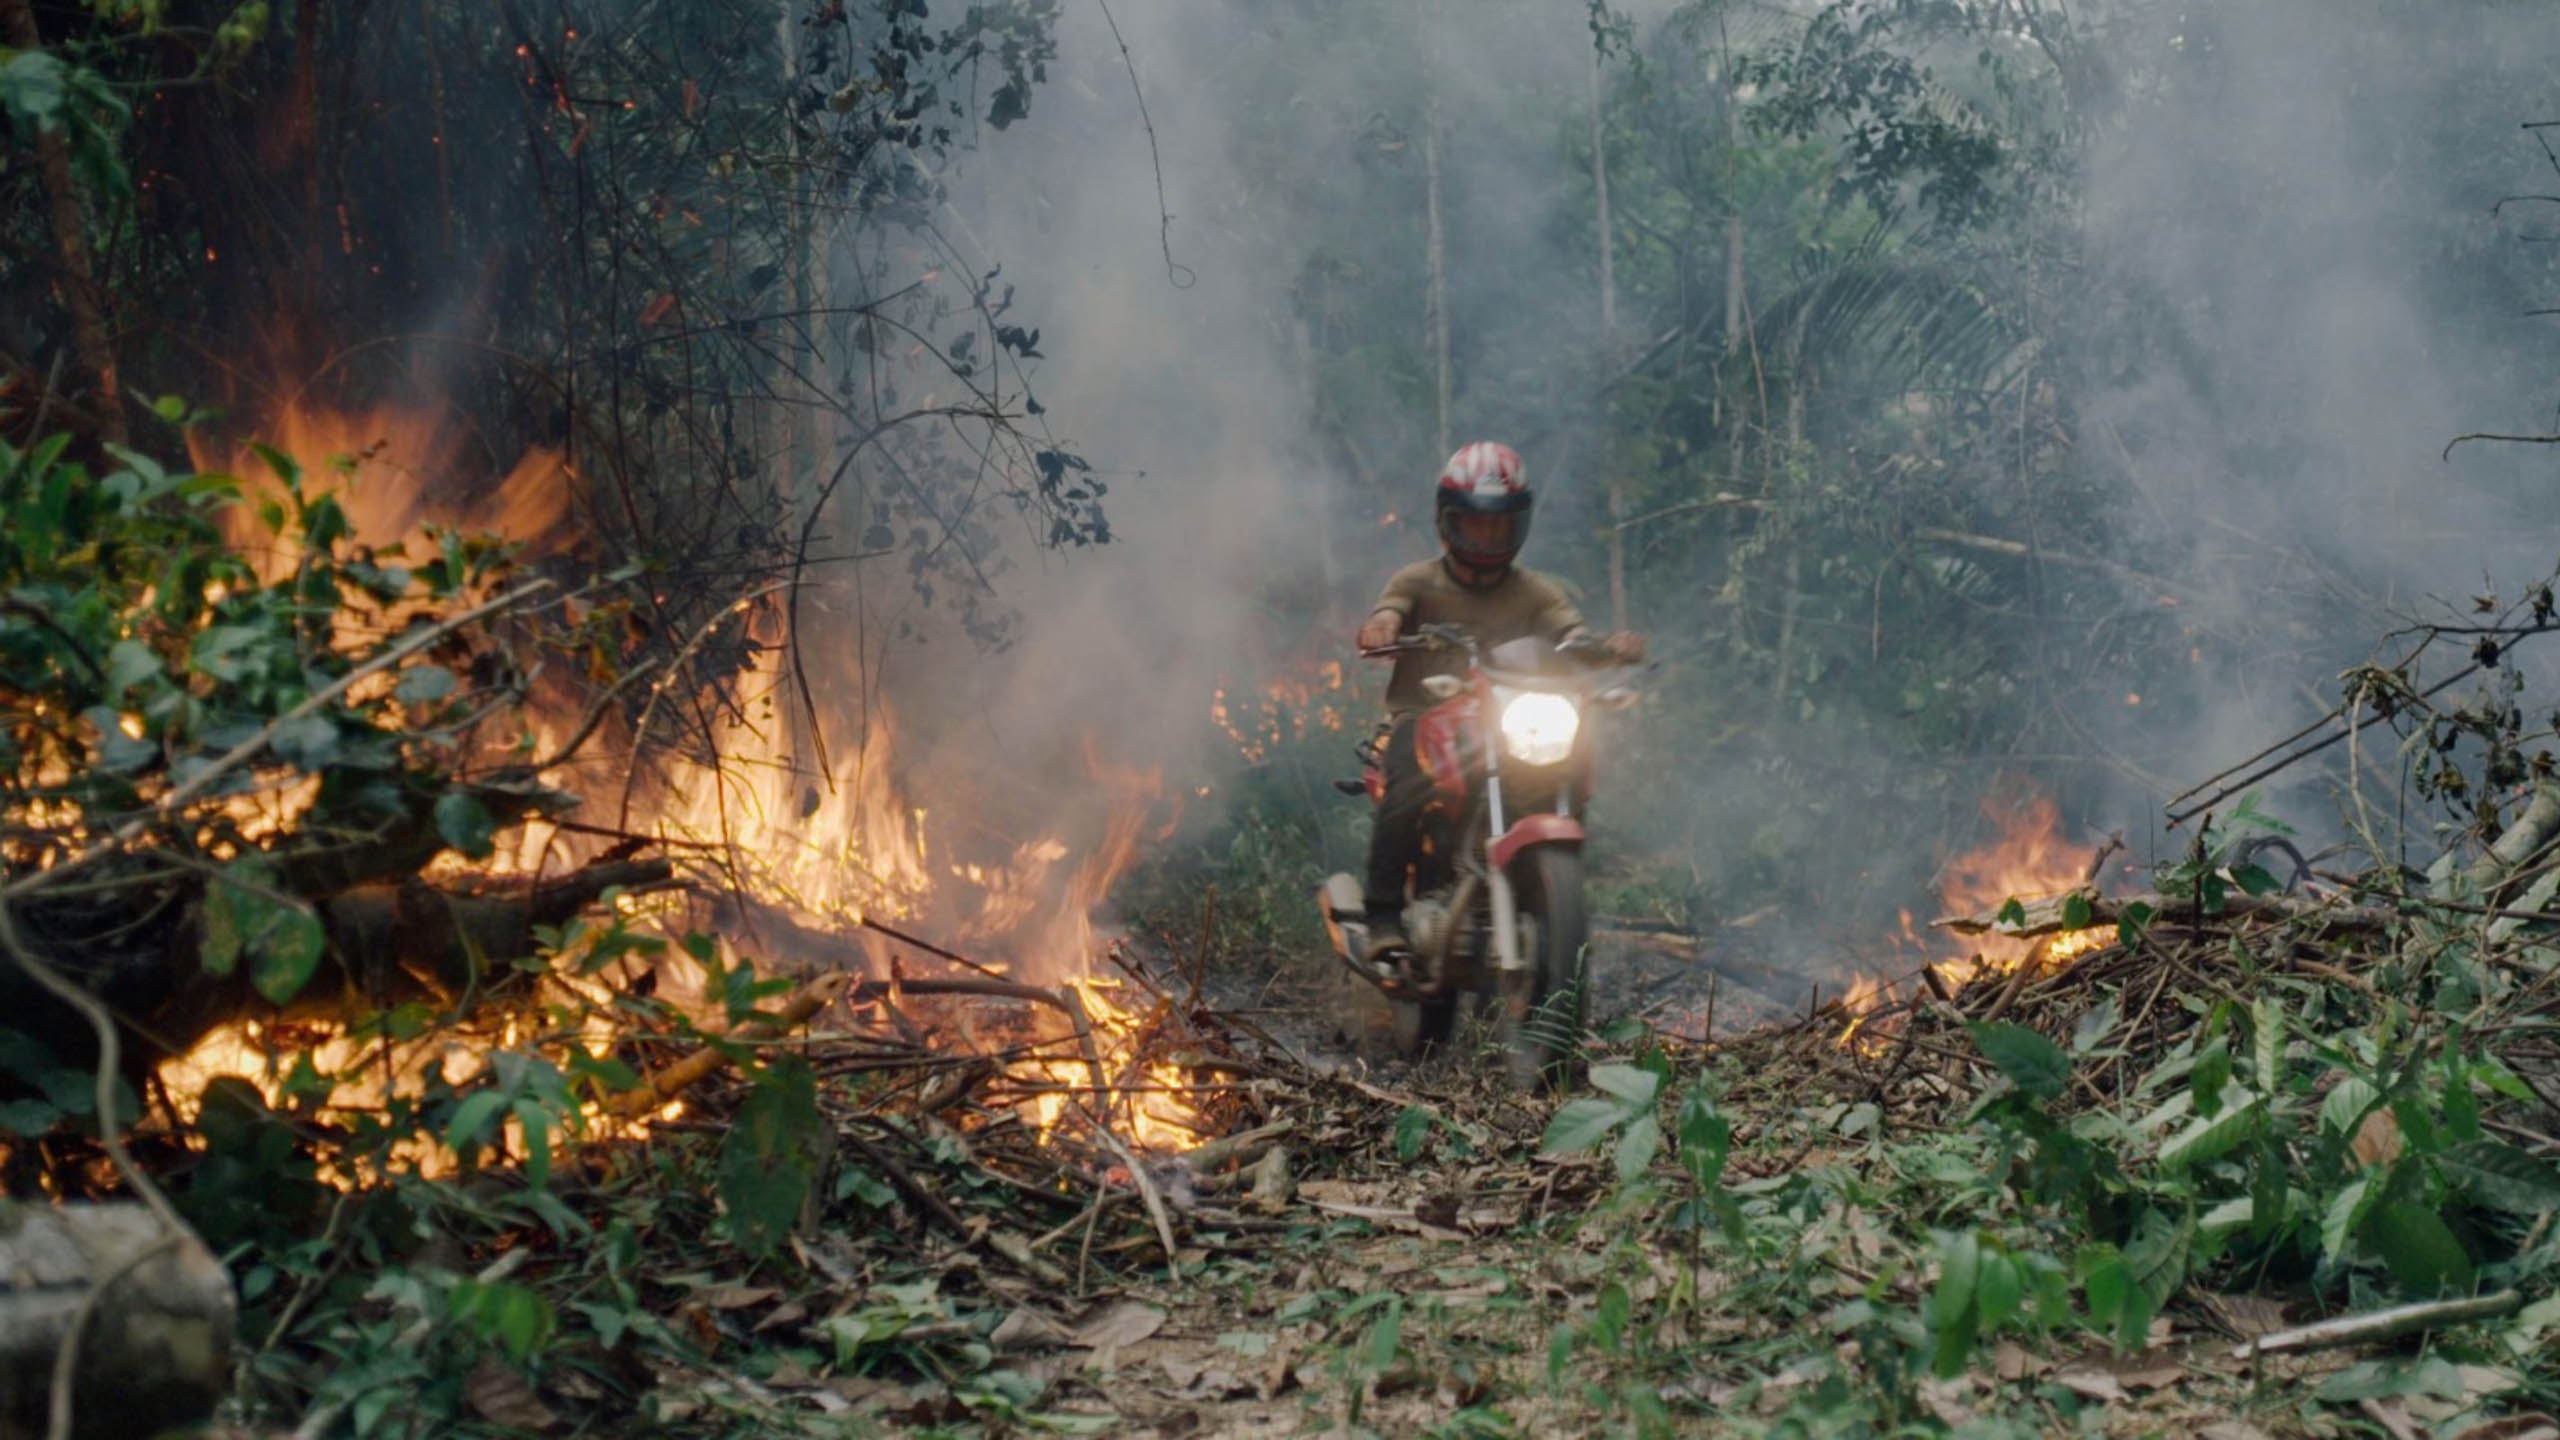 Cena do filme O Território. A imagem mostra uma pessoa dirigindo uma moto vermelha ao centro. Ela atravessa uma mata por uma trilha e algumas árvores ao redor estão pegando fogo.